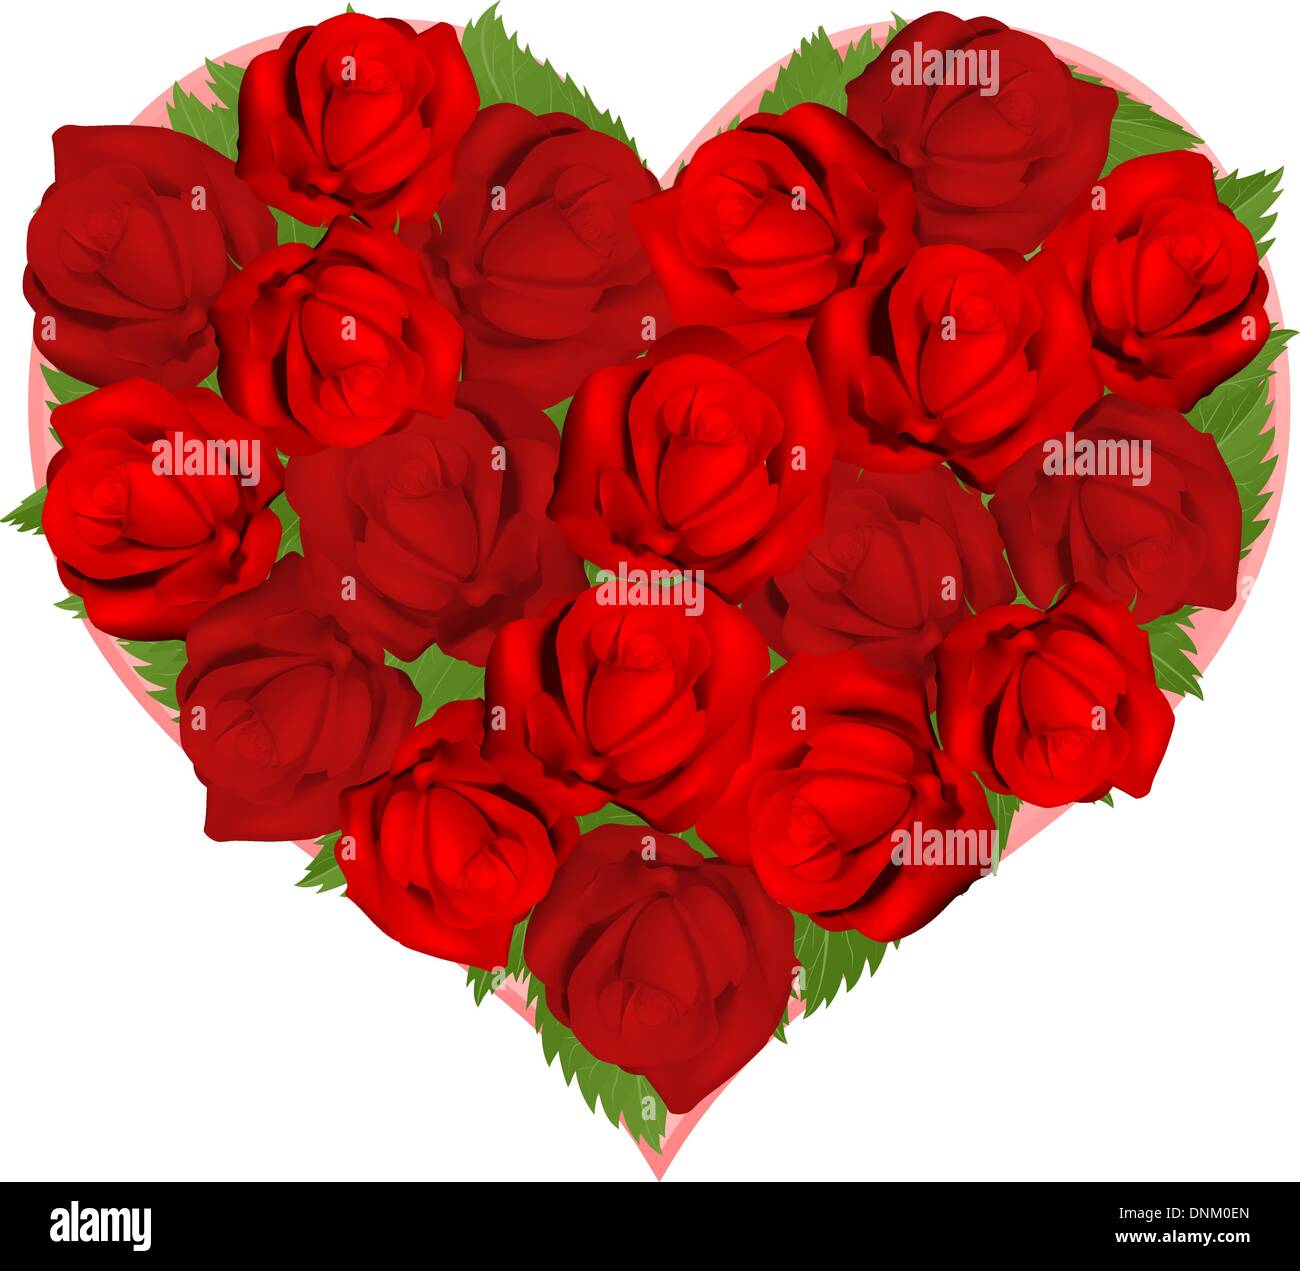 Illustrazioni di bellissime rose rosse nel cuore disposizione sagomata Illustrazione Vettoriale